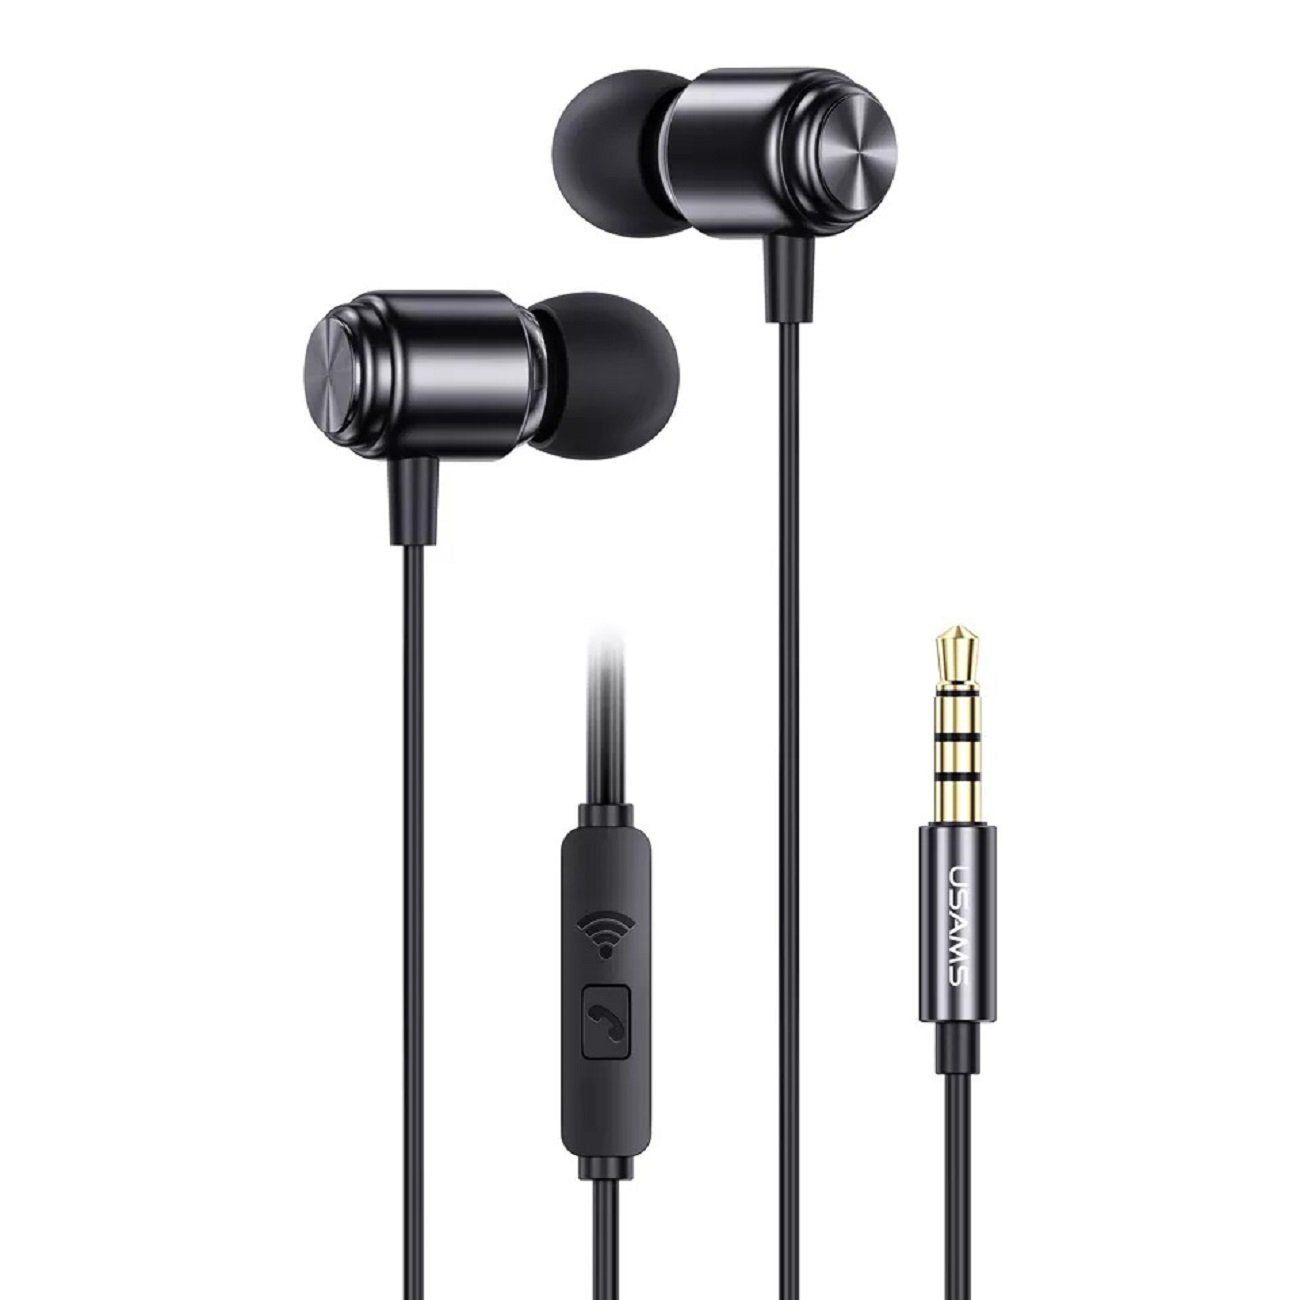 USAMS EP-44 Aux 3,5mm Kopfhörerstecker Bass HiFi Stereo Ohrhörer In-Ear-Kopfhörer (Kabelgebunden, In-Ear-Kopfhörer, intergrierte Steuerung für Anrufe und Musik, mit 3,5mm, 1,2m, Stereo-Kopfhörer) Schwarz